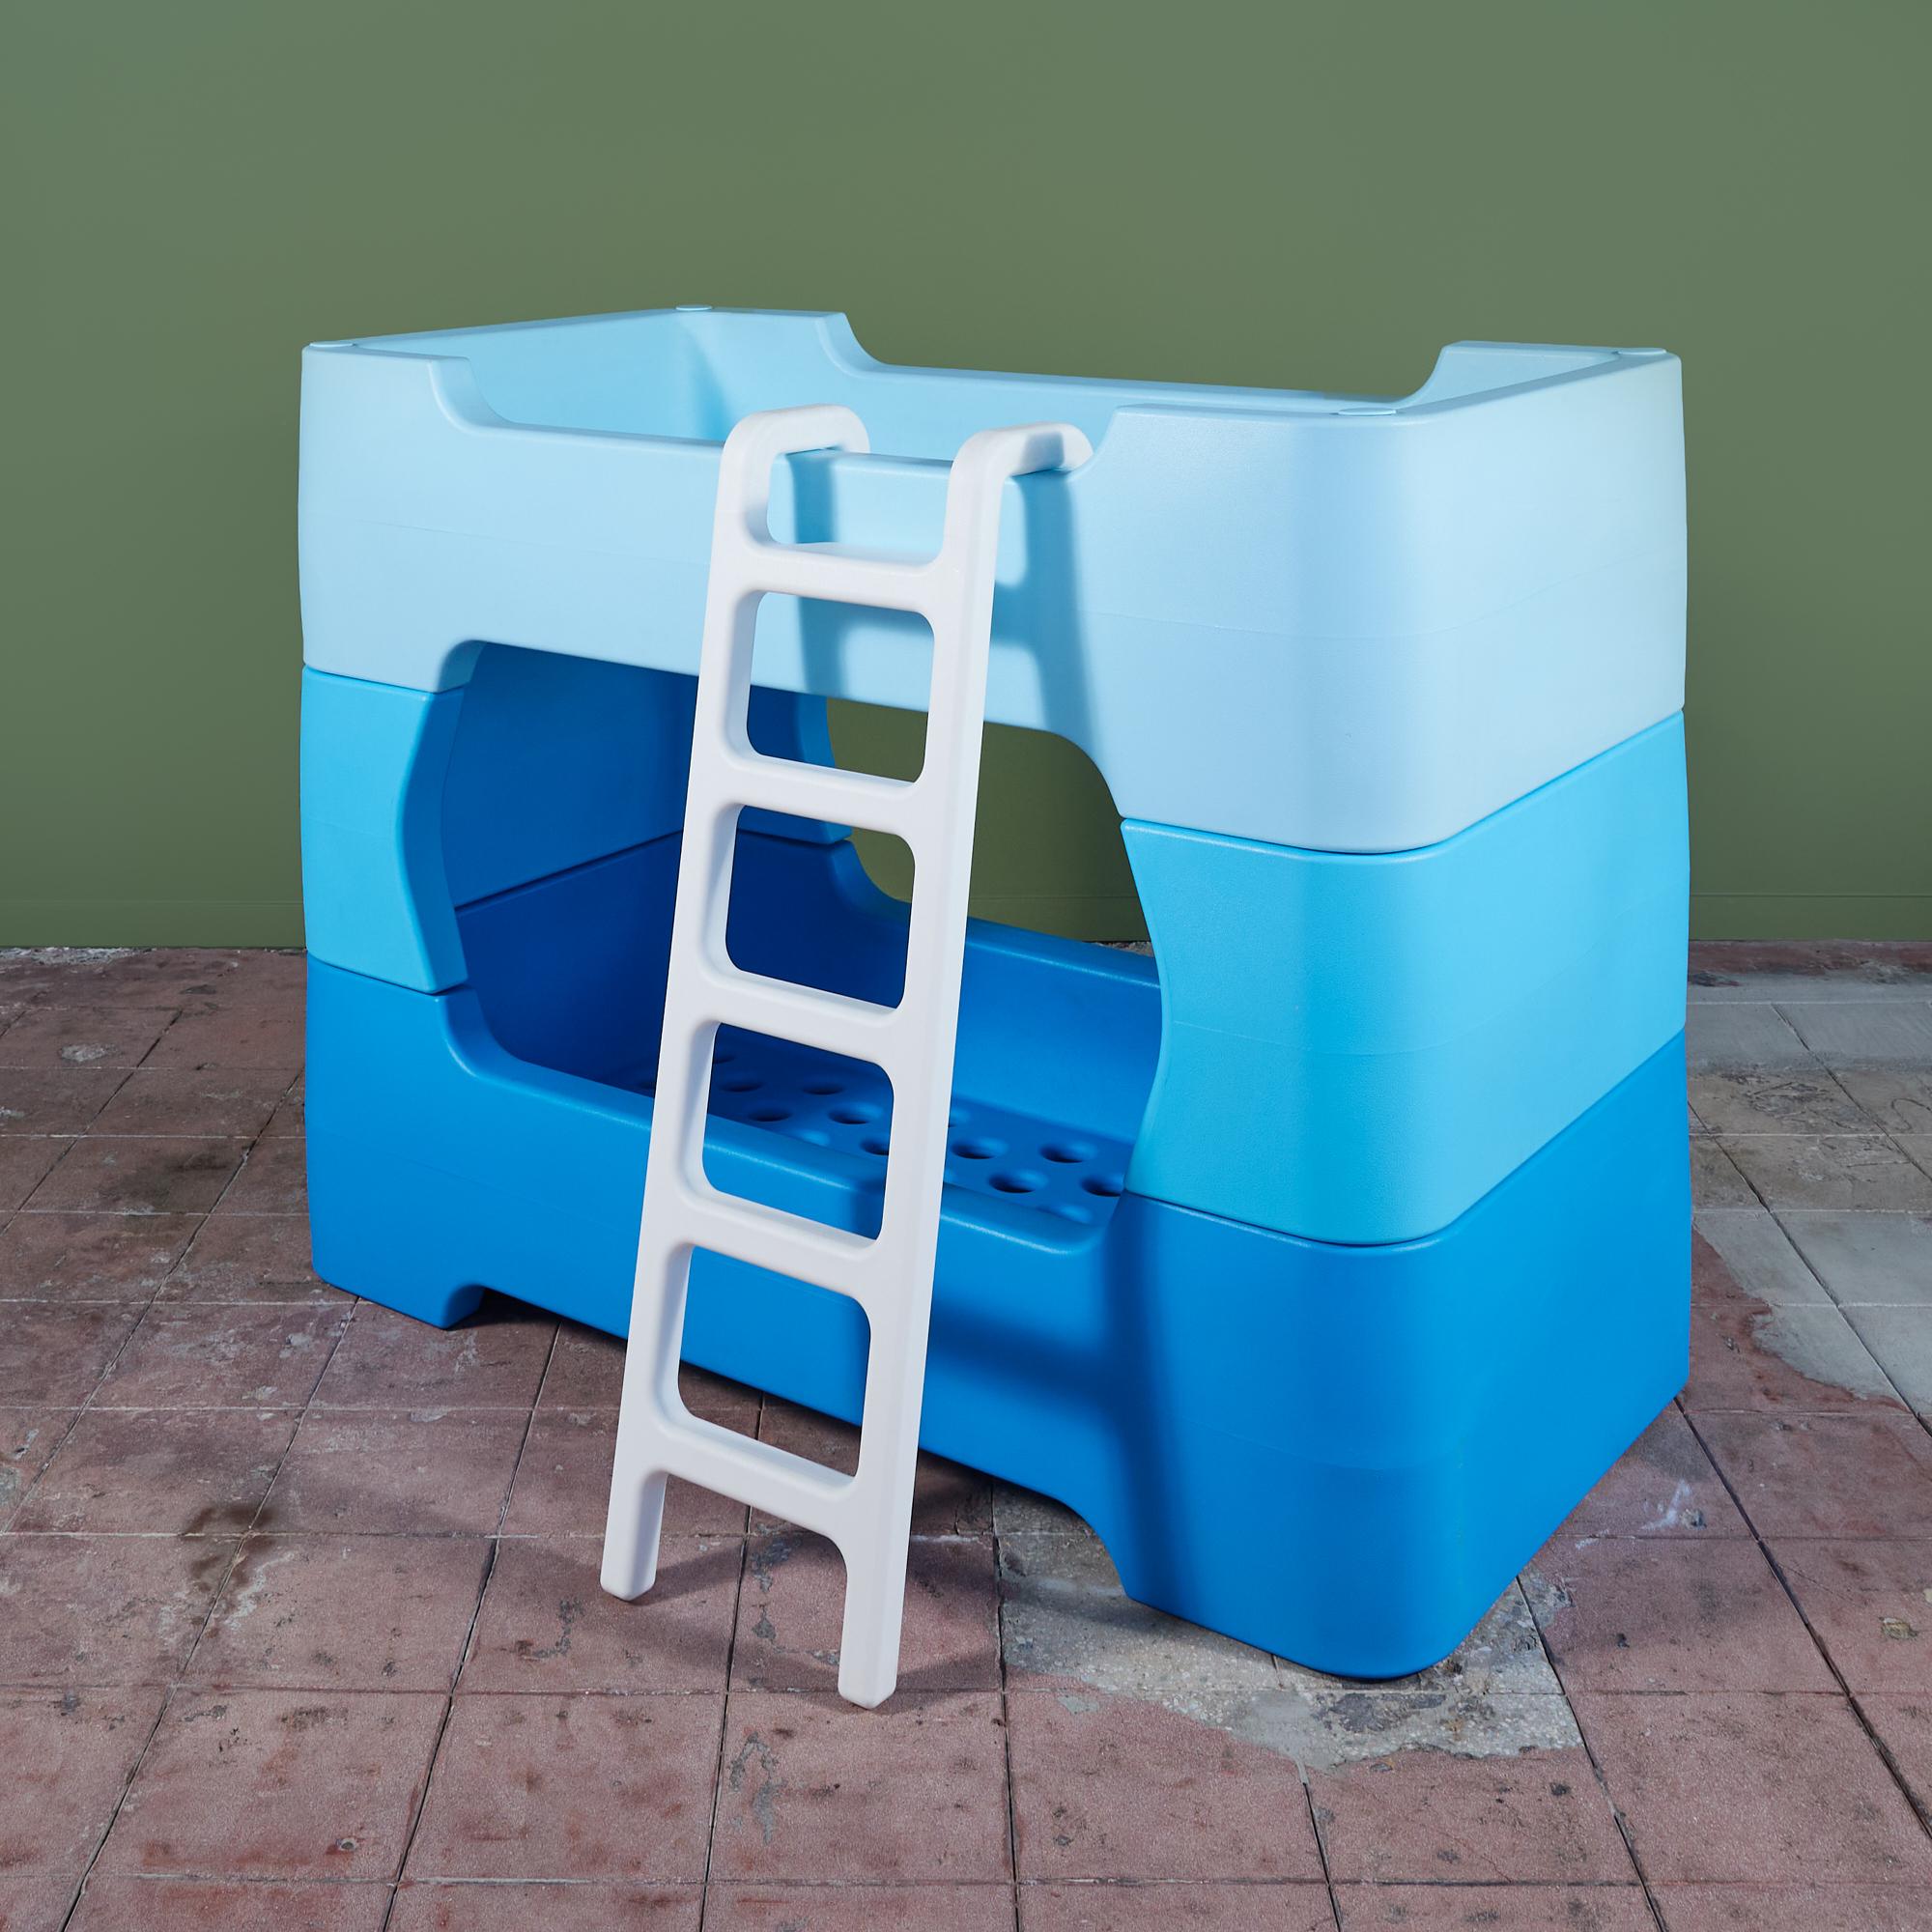 Le lit superposé Bunky de Marc Newson pour Magis c. 2011, Italie, est un système modulaire en plastique moulé conçu pour s'empiler ou être utilisé comme deux lits séparés. Le lit a été la première conception de Newsom pour les enfants et ses bords